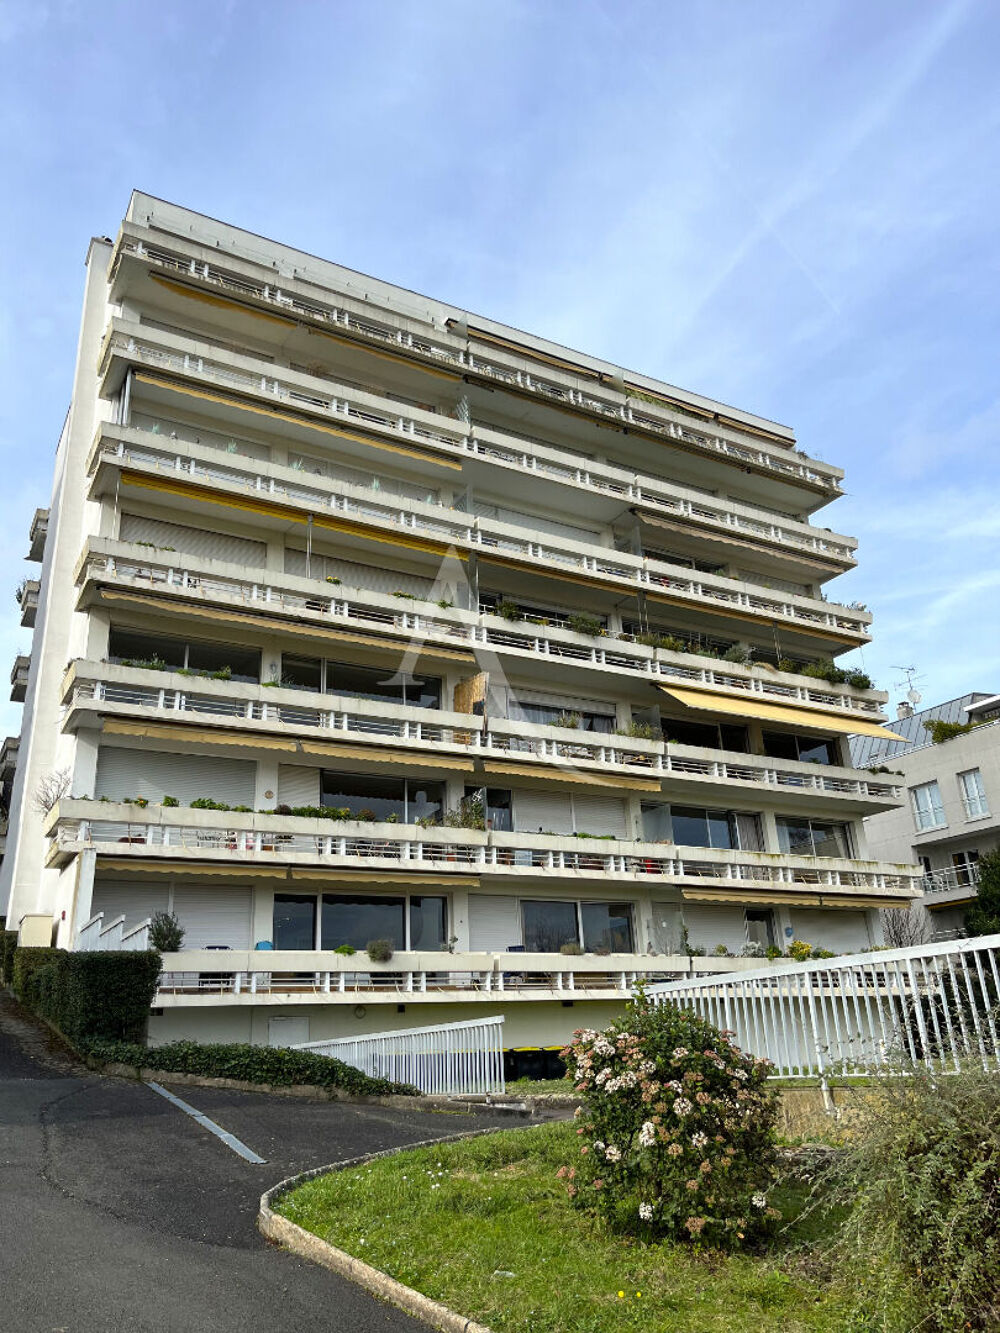 Vente Appartement Rare Appartement Blois 107 m quartier Basilique Blois